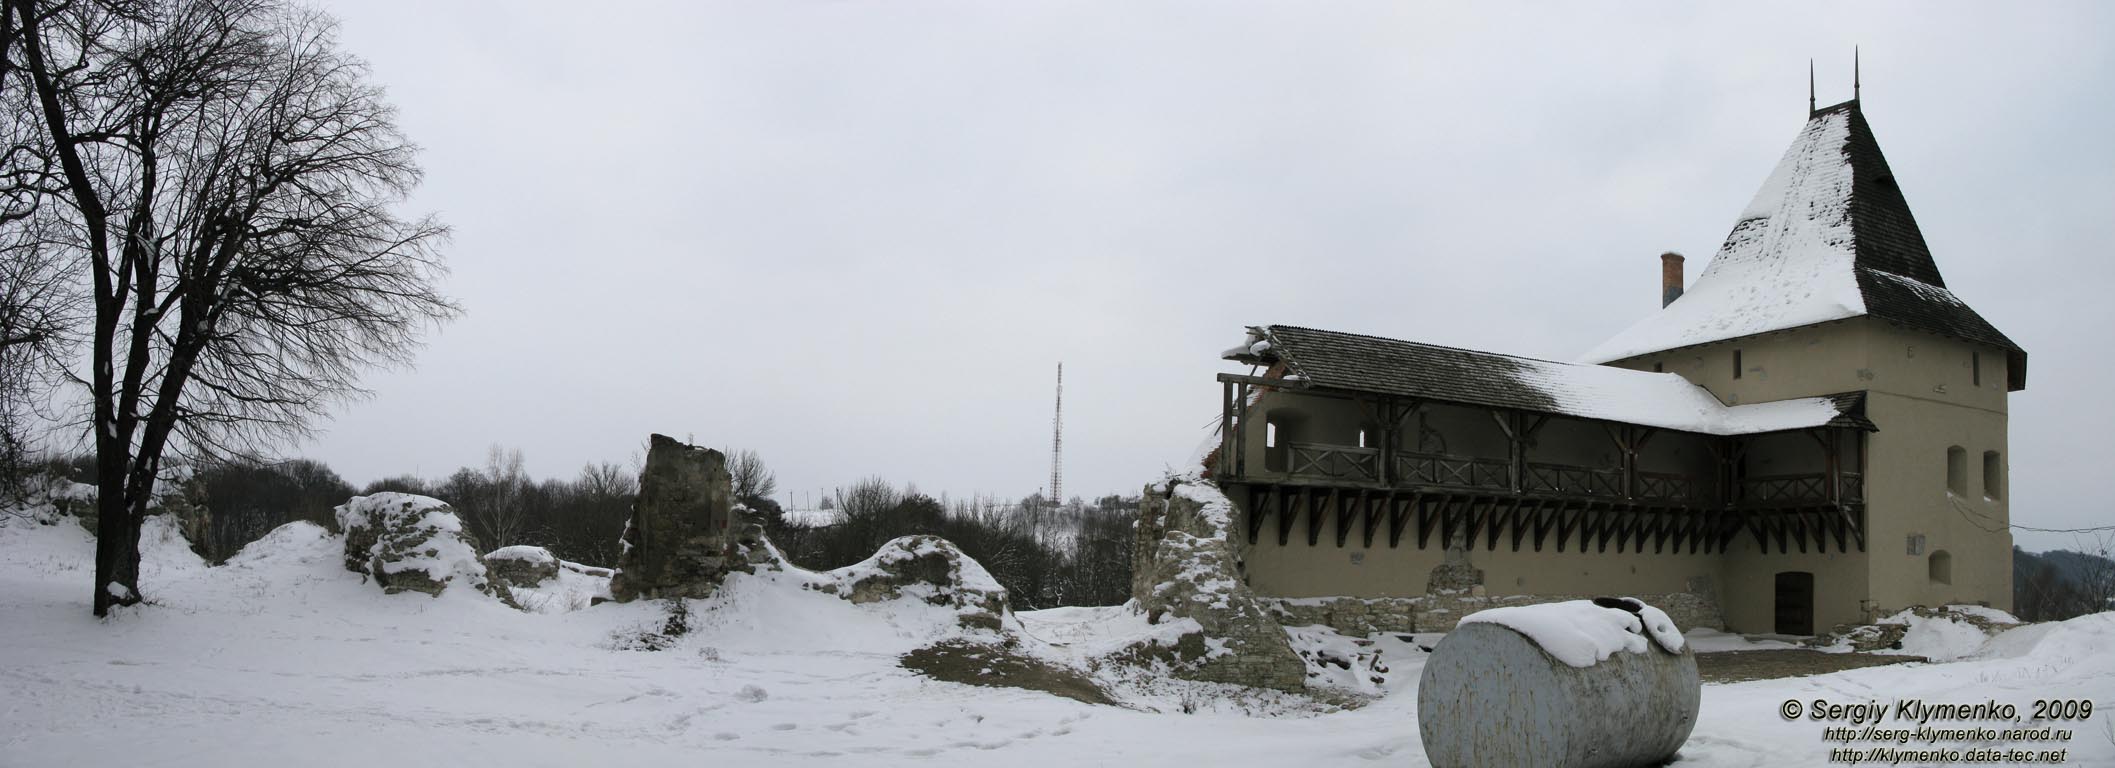 Галич. Фото. Восстановленная башя Галицкого замка вблизи (вид изнутри замка).